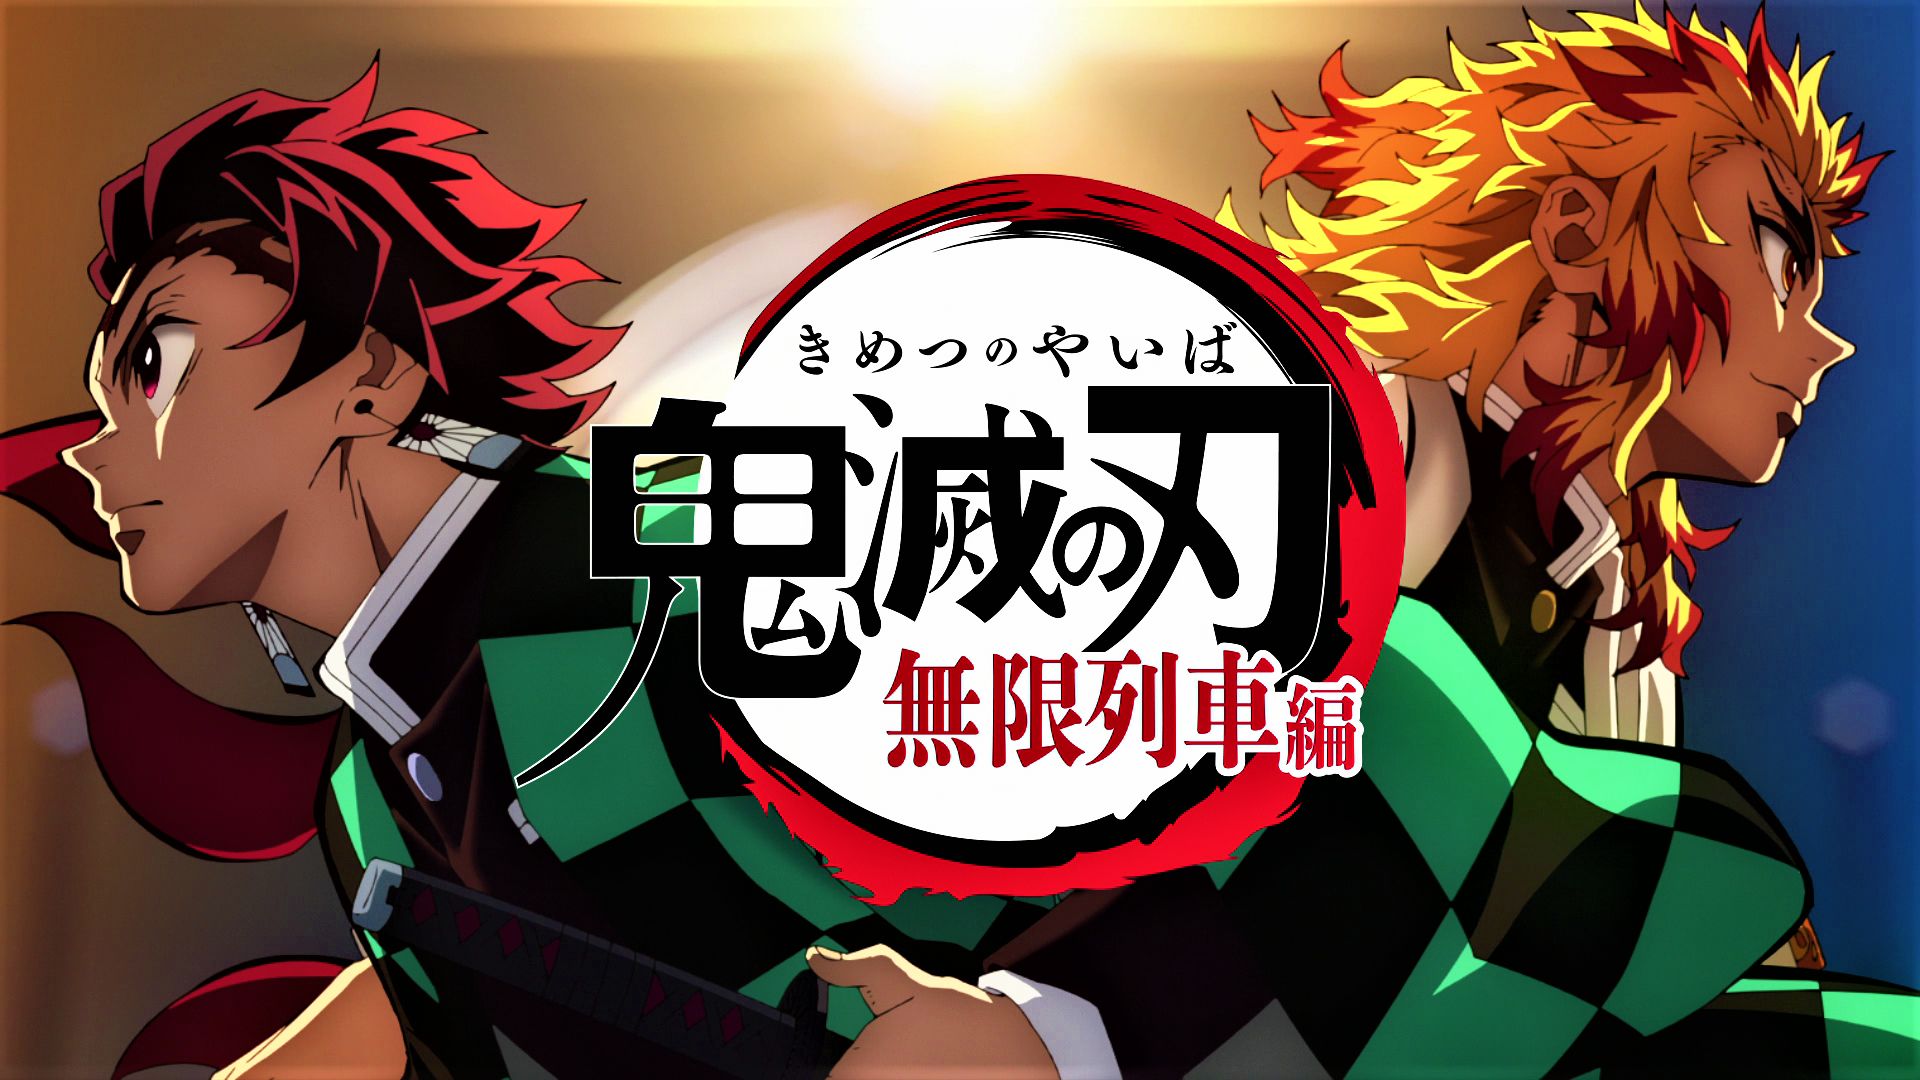 Free download wallpaper Anime, Demon Slayer: Kimetsu No Yaiba, Kyojuro Rengoku, Tanjiro Kamado on your PC desktop